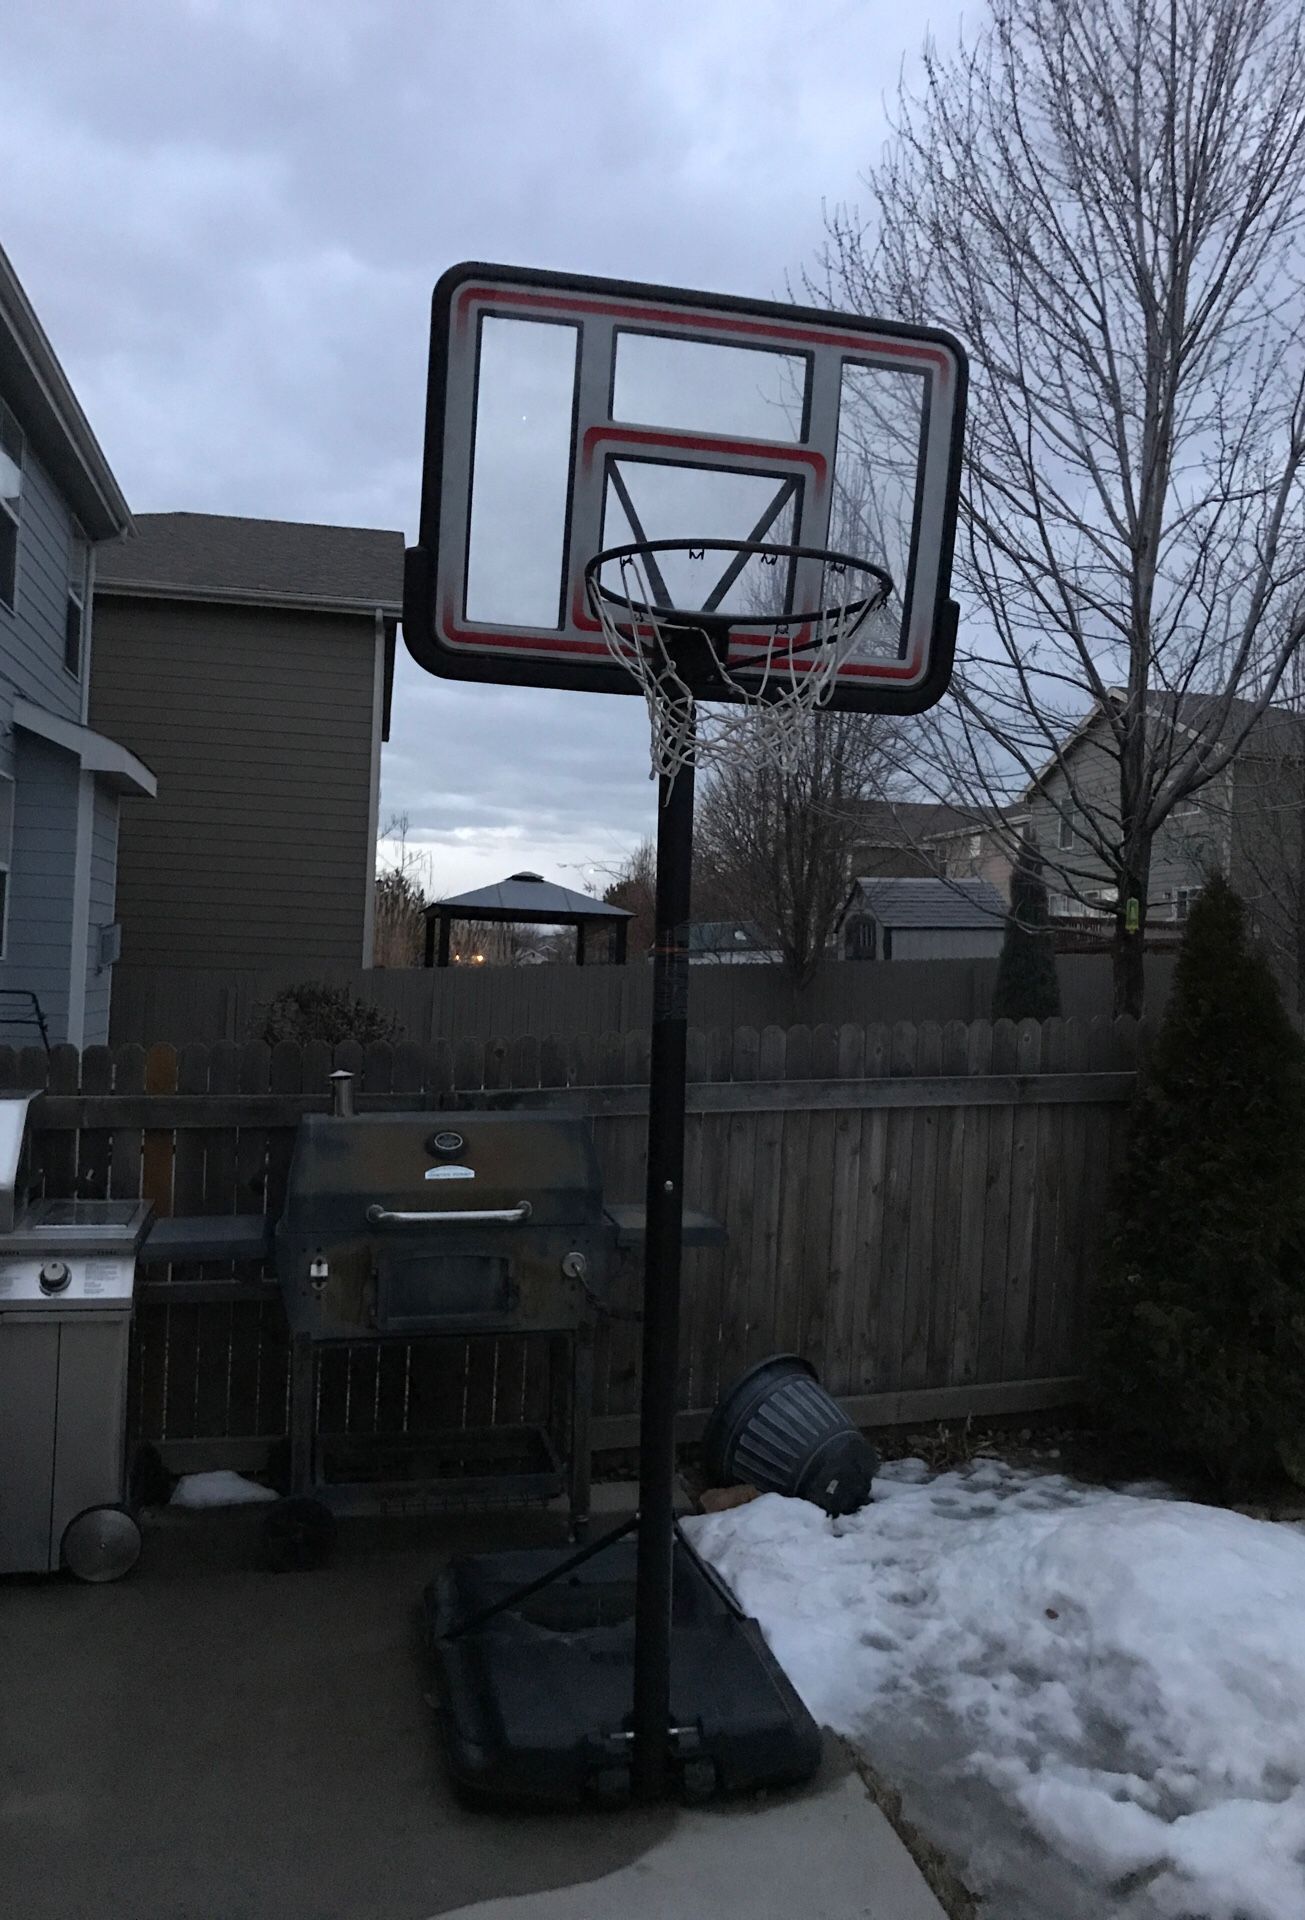 Basketball hoops